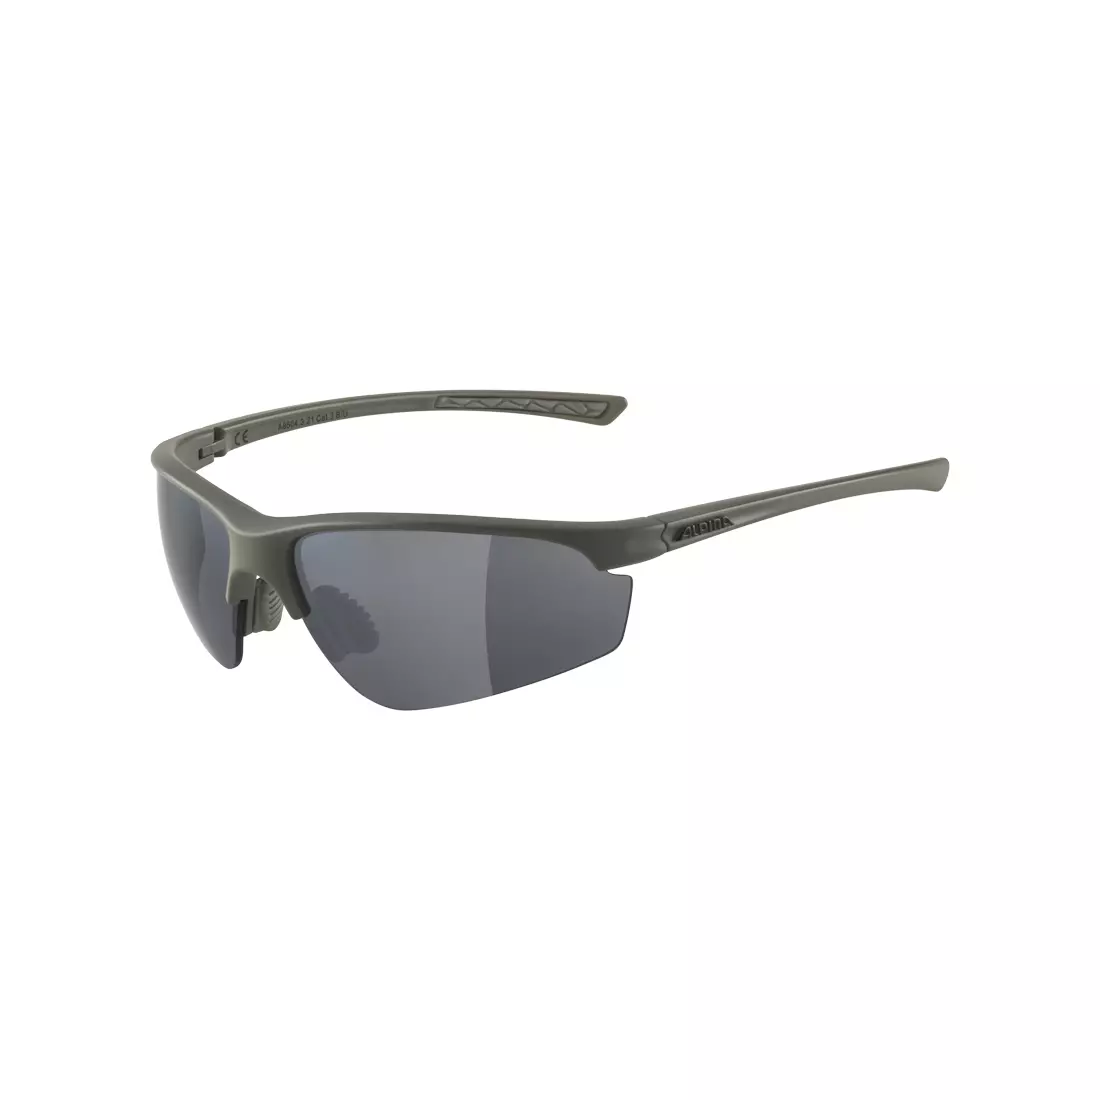 ALPINA TRI-EFFECT 2.0 Sportbrille mit Wechselgläsern, moon-grey matt